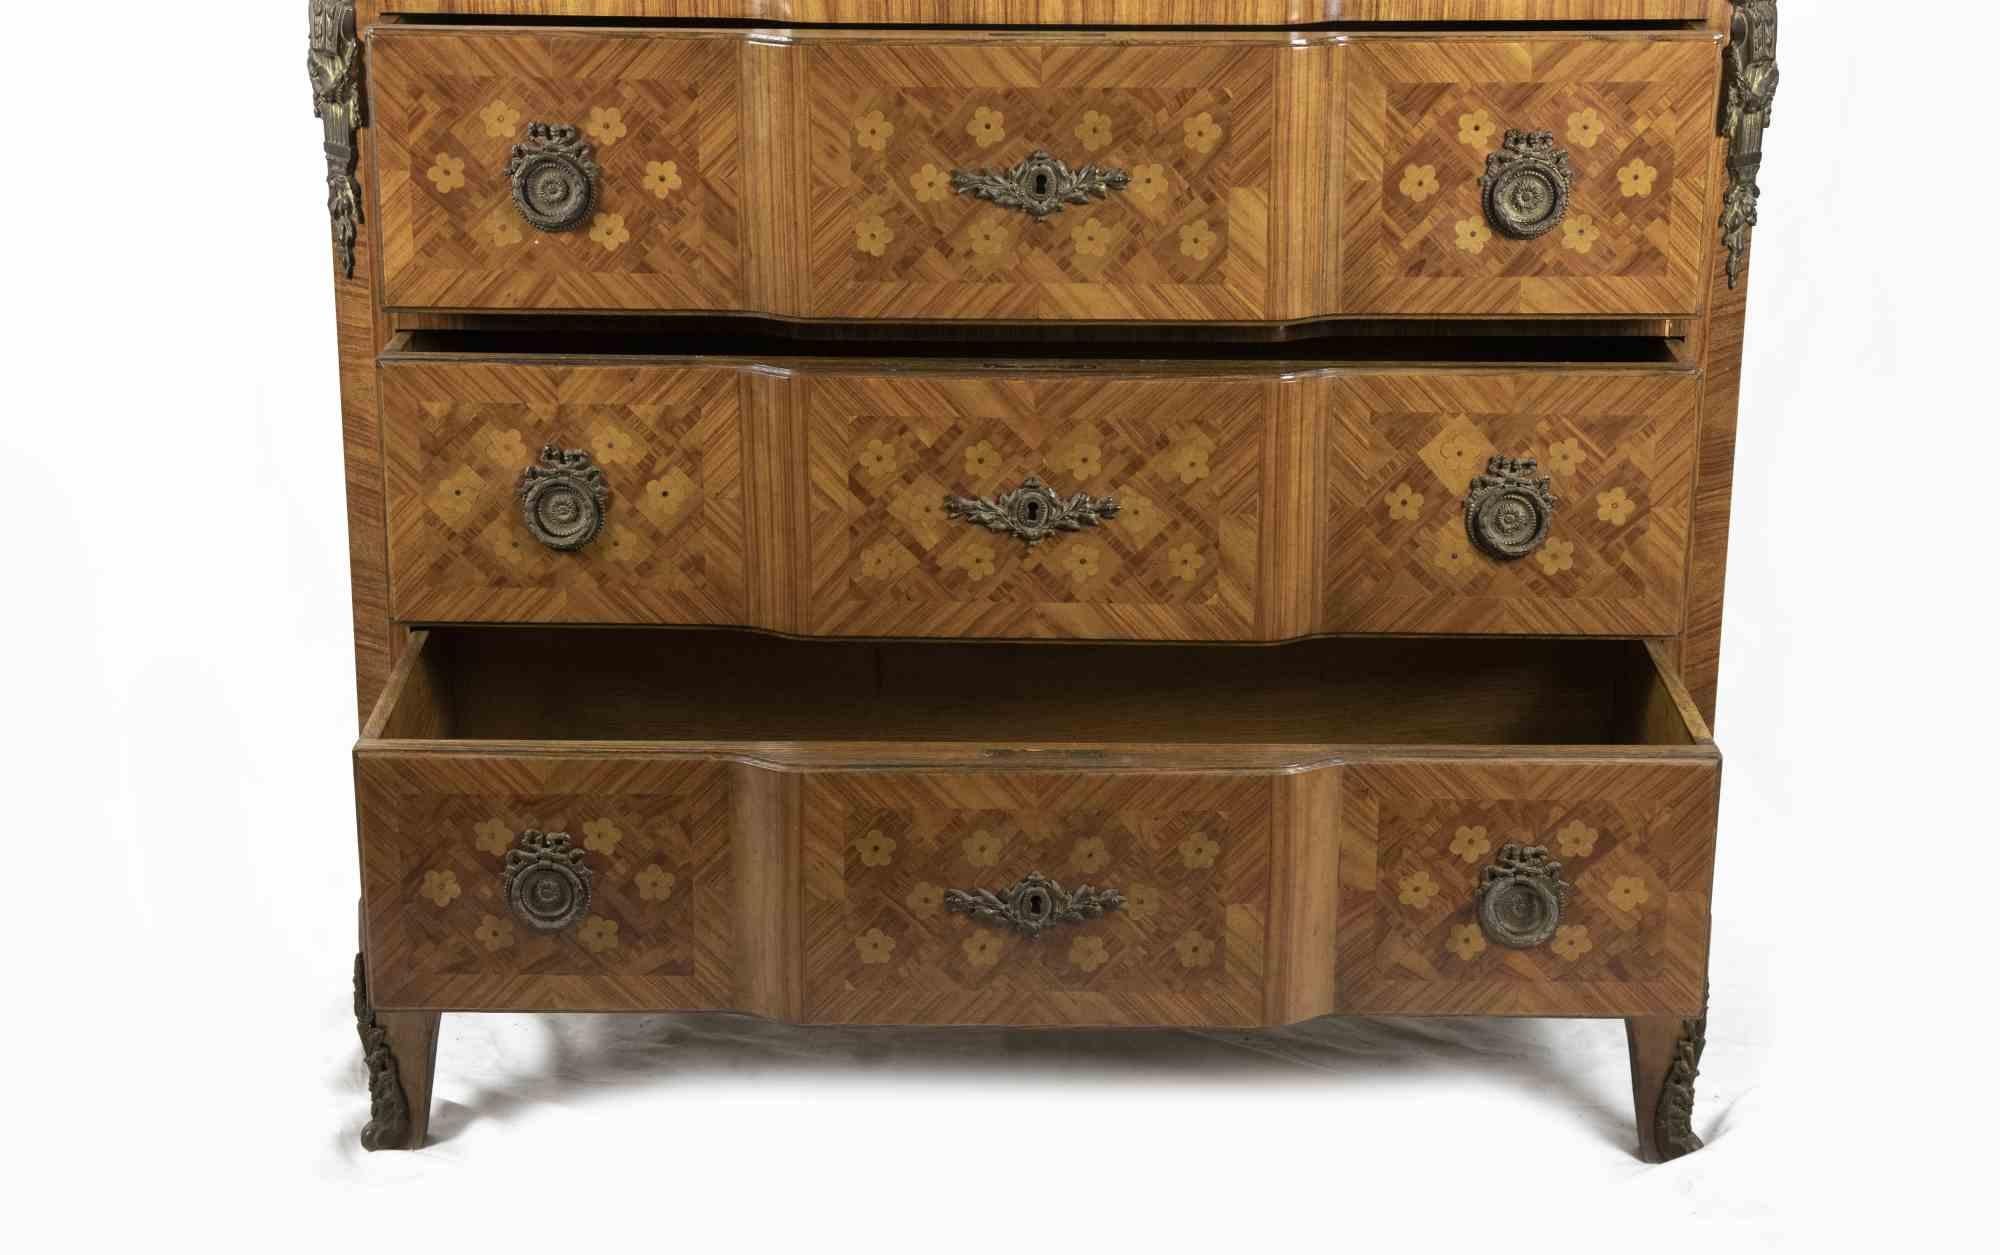 Die Schublade ist ein originelles Design-Möbelstück eines italienischen Herstellers aus dem 18. Jahrhundert.

Französische Kommode aus Holz, vollständig mit geometrischen Motiven intarsiert, mit Verzierungen und Friesen aus vergoldeter und